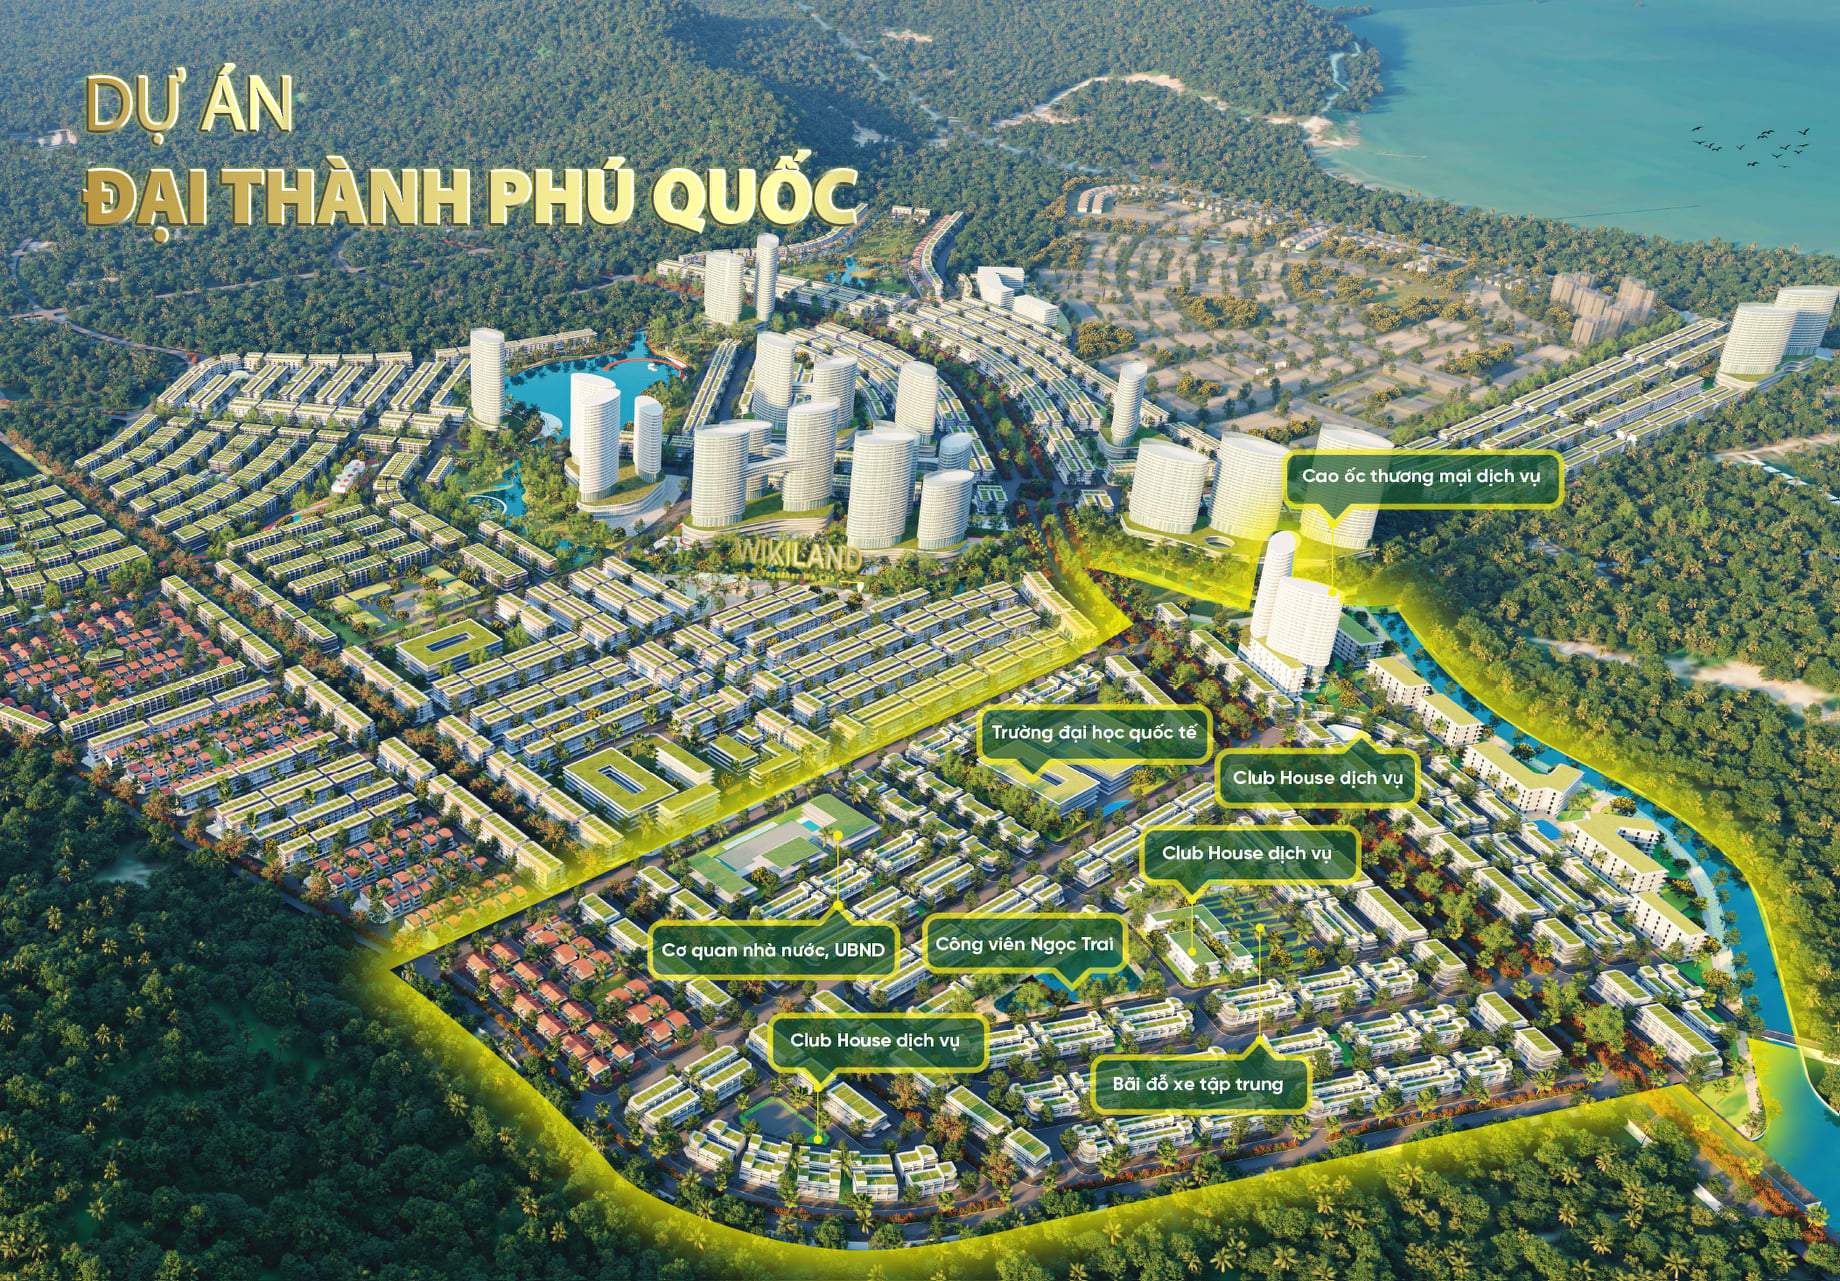 Tiện ích nổi bật của dự án Đại Thành Phú Quốc